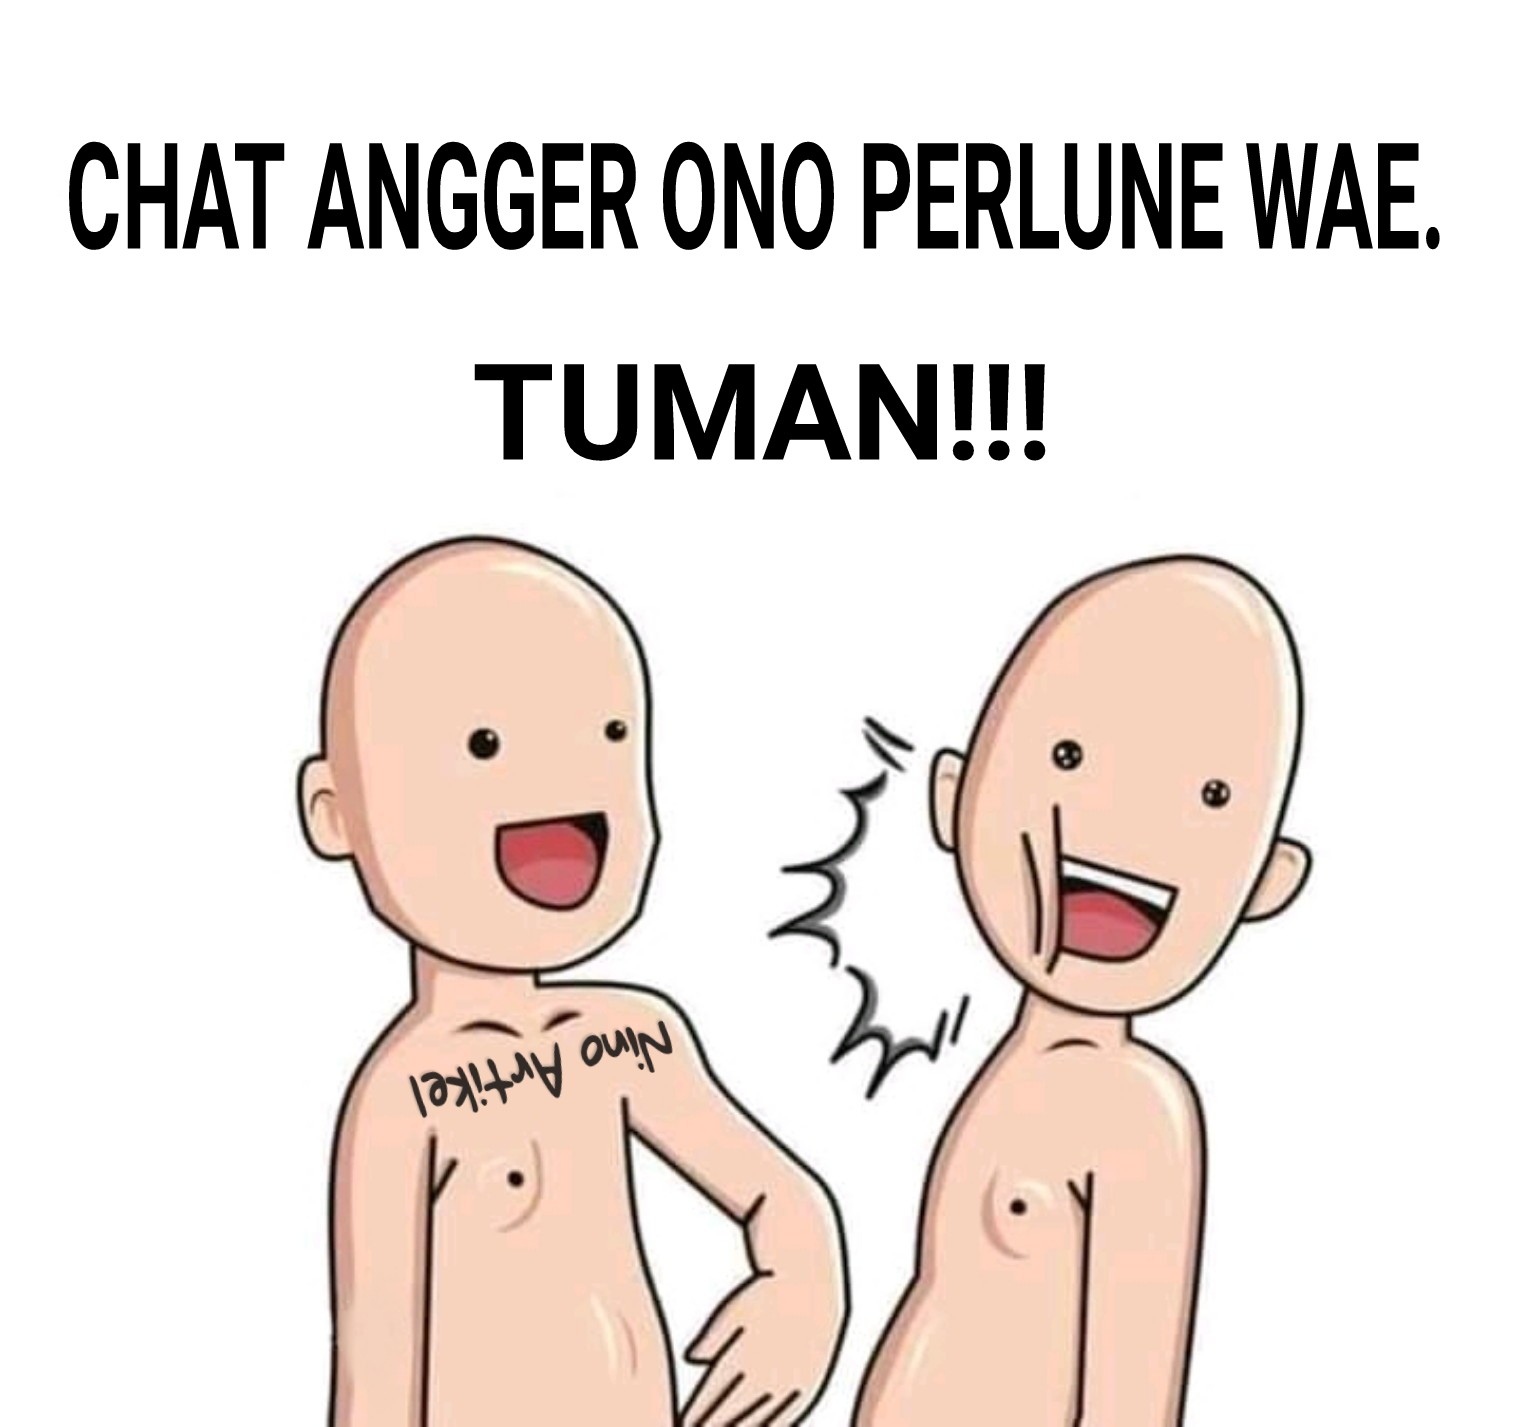 Chat Angger Ono Perlune Wae. Tuman!